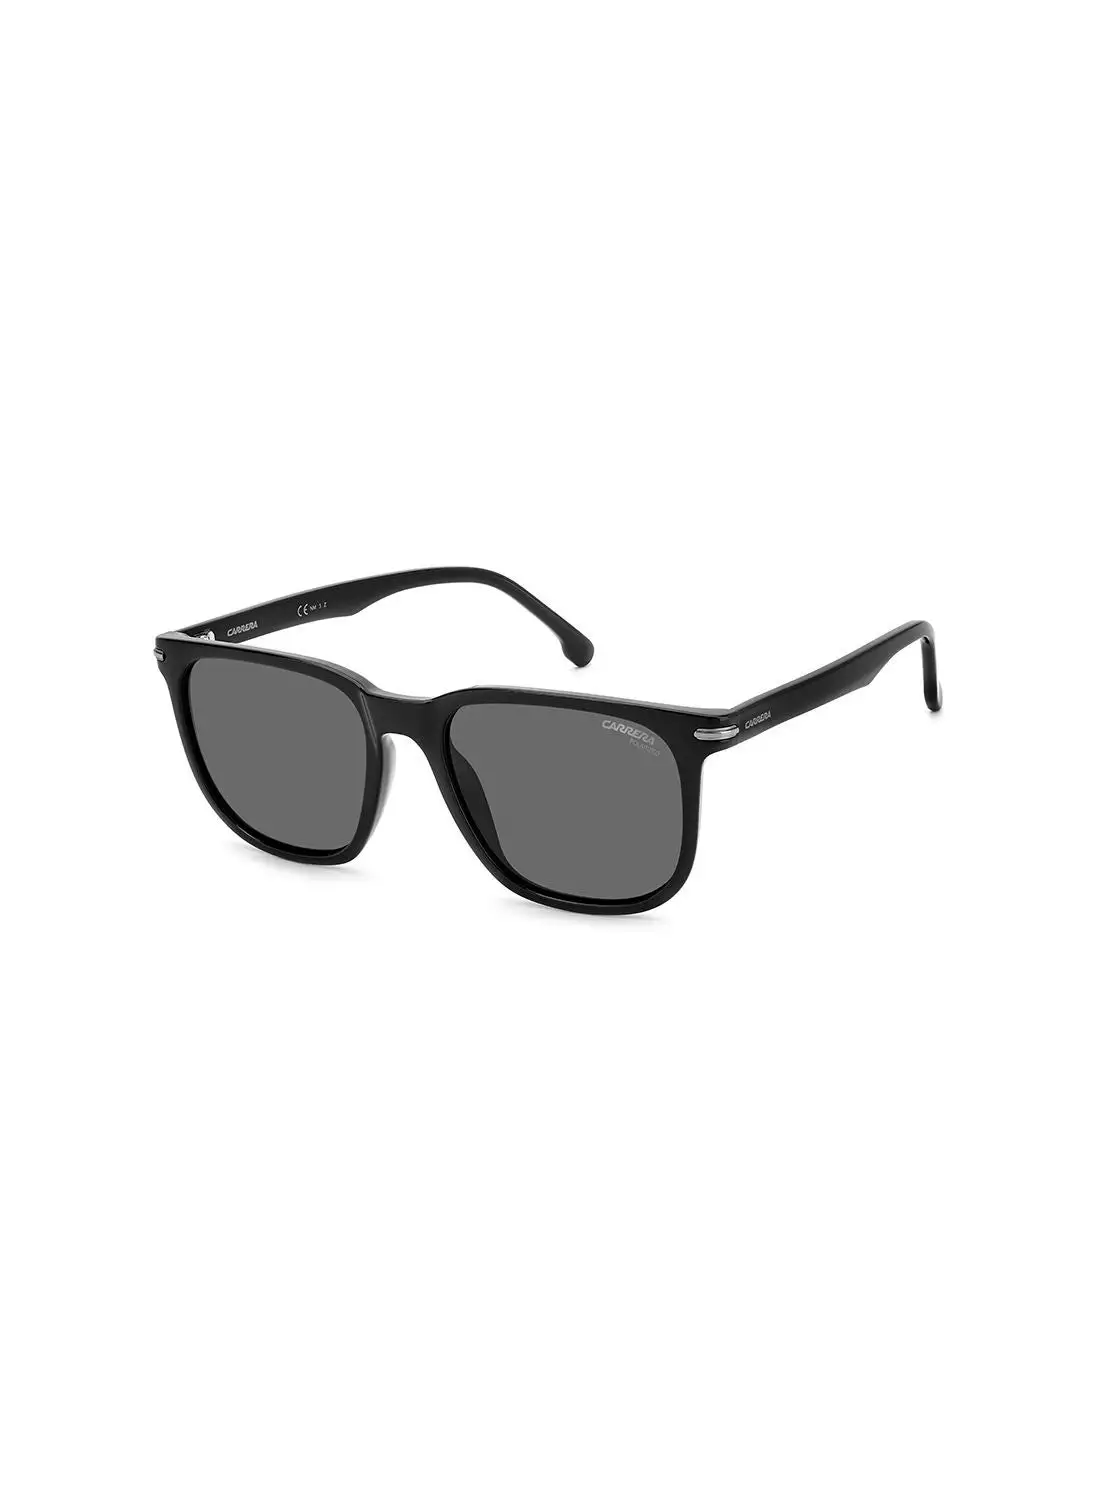 نظارة شمسية مربعة للحماية من الأشعة فوق البنفسجية للجنسين من كاريرا - Carrera 300/S أسود/رمادي 54 - مقاس العدسة: 54 ملم